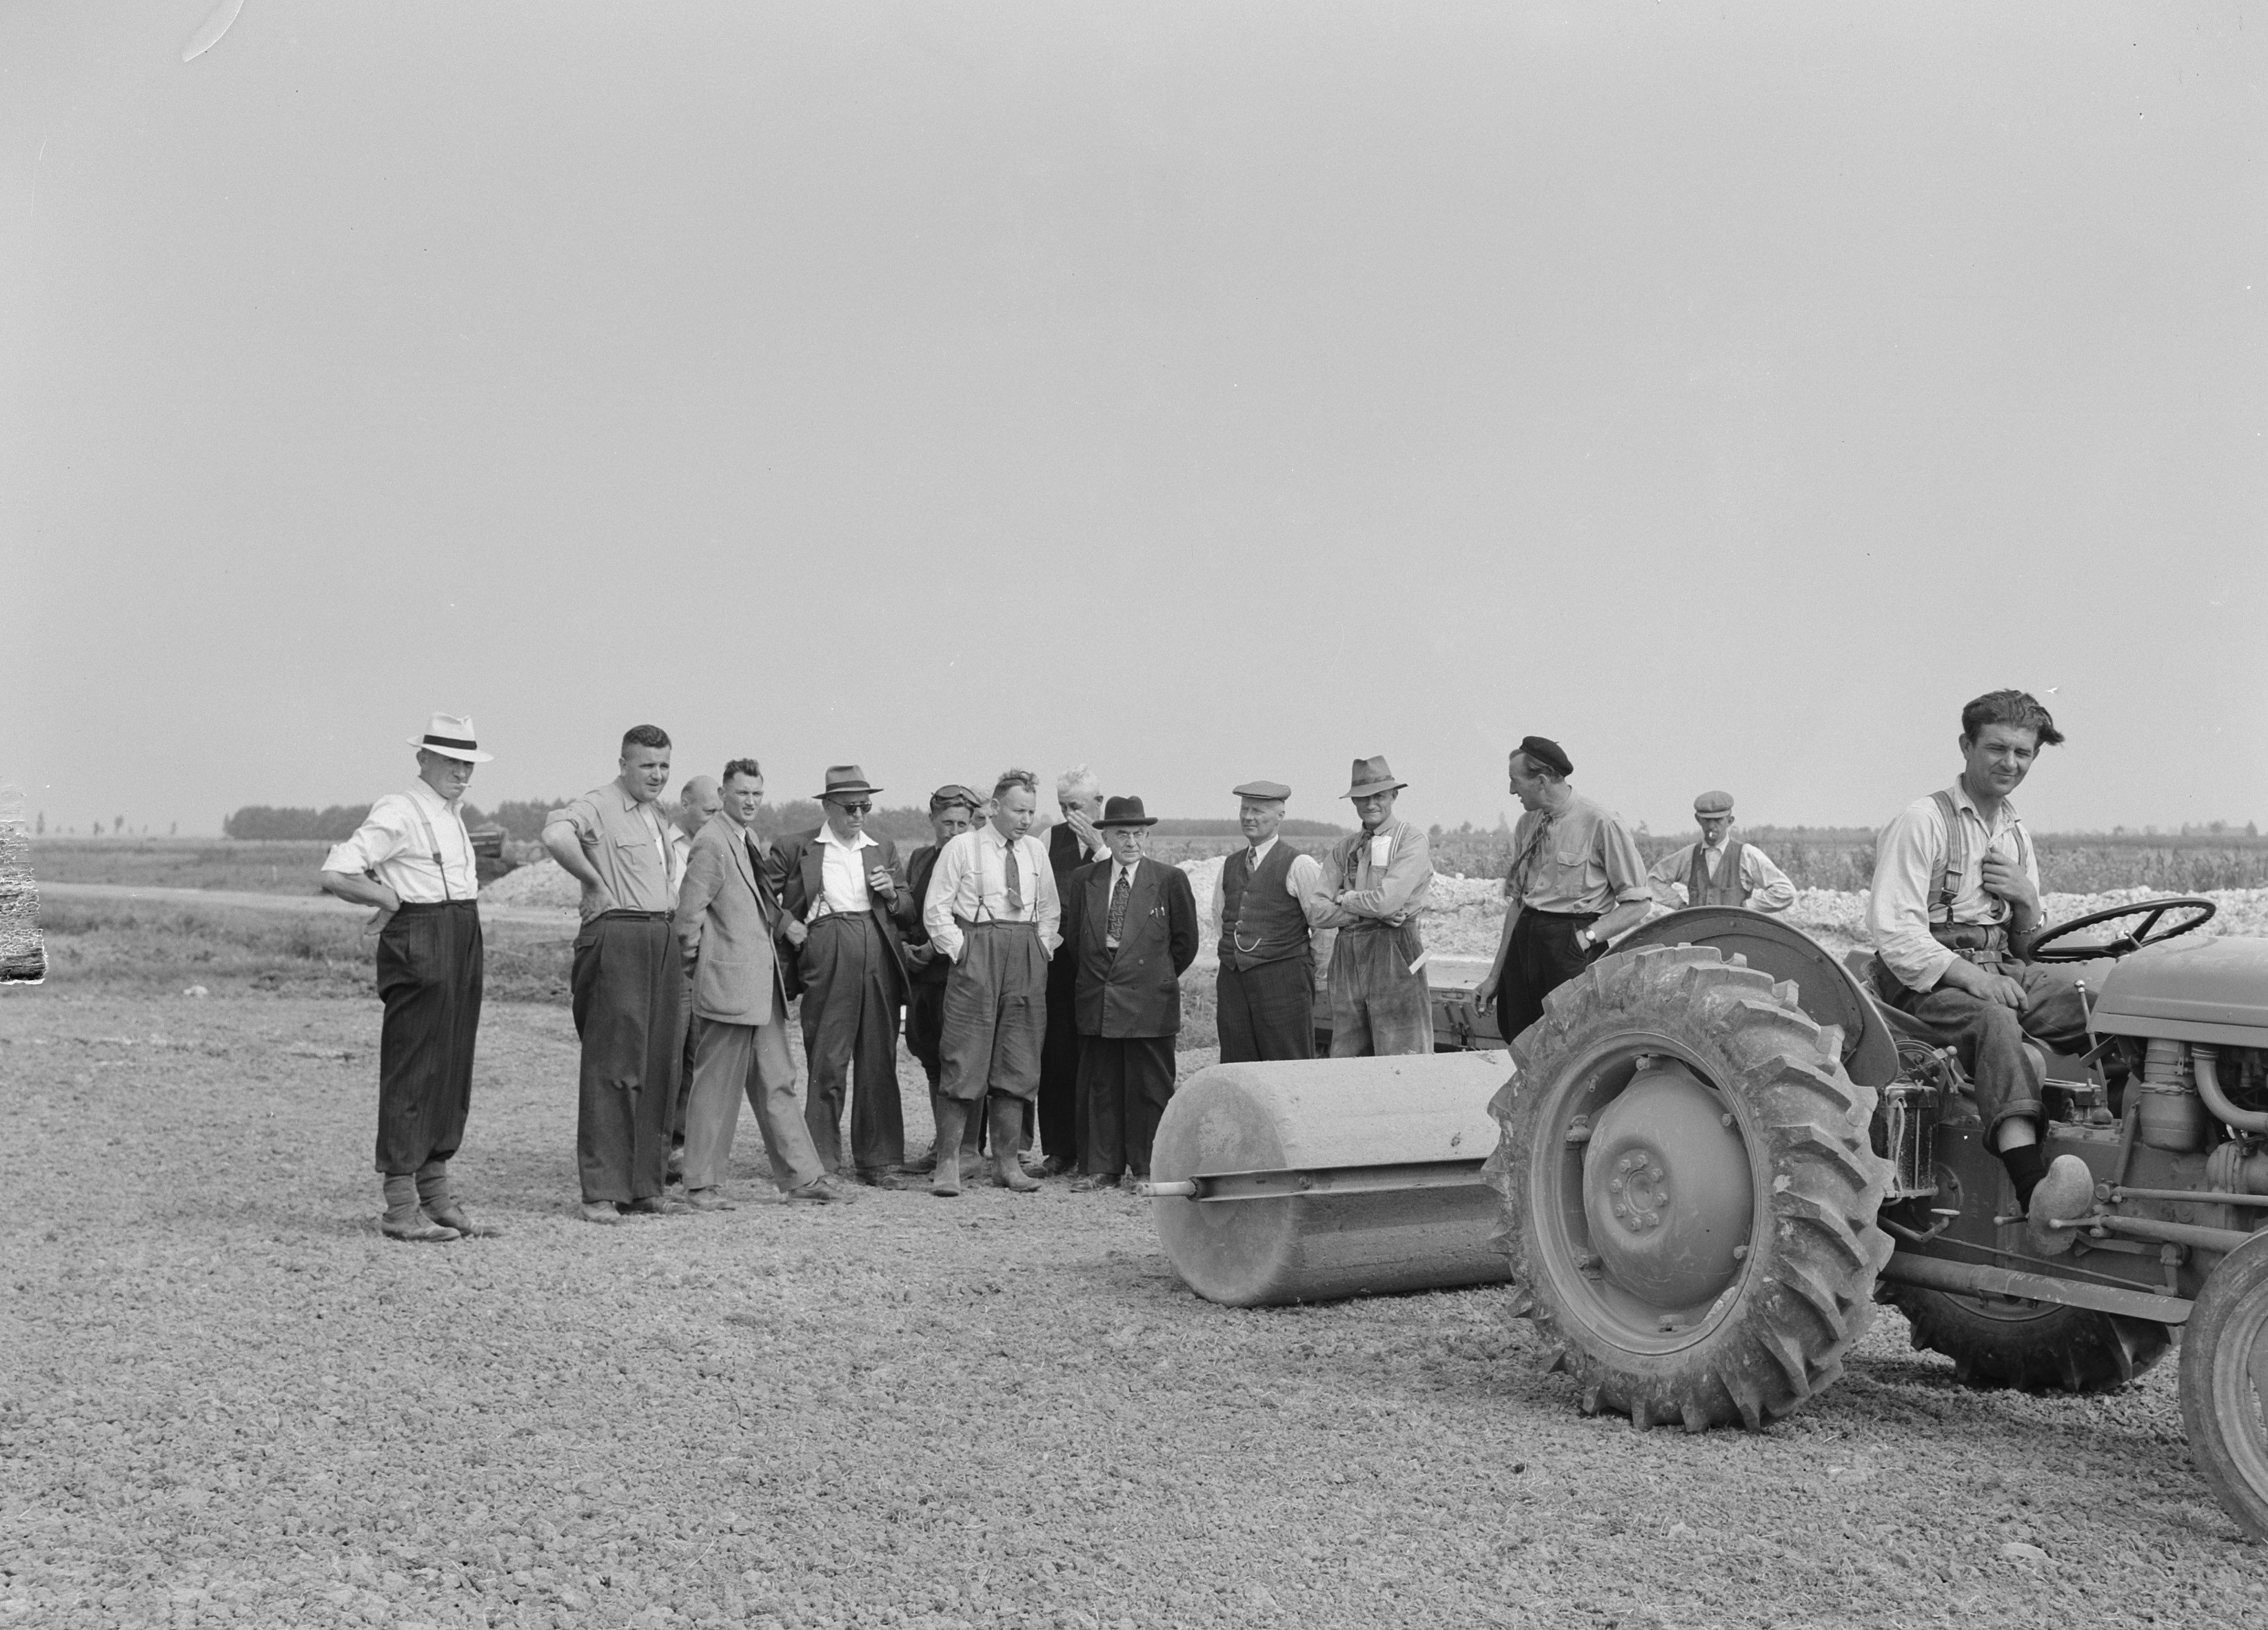 Ruilverkaveling: een ruilverkavelingscommissie kijkt naar een demonstratie van een landbouwmachine. Beeld: Nationaal Archief.